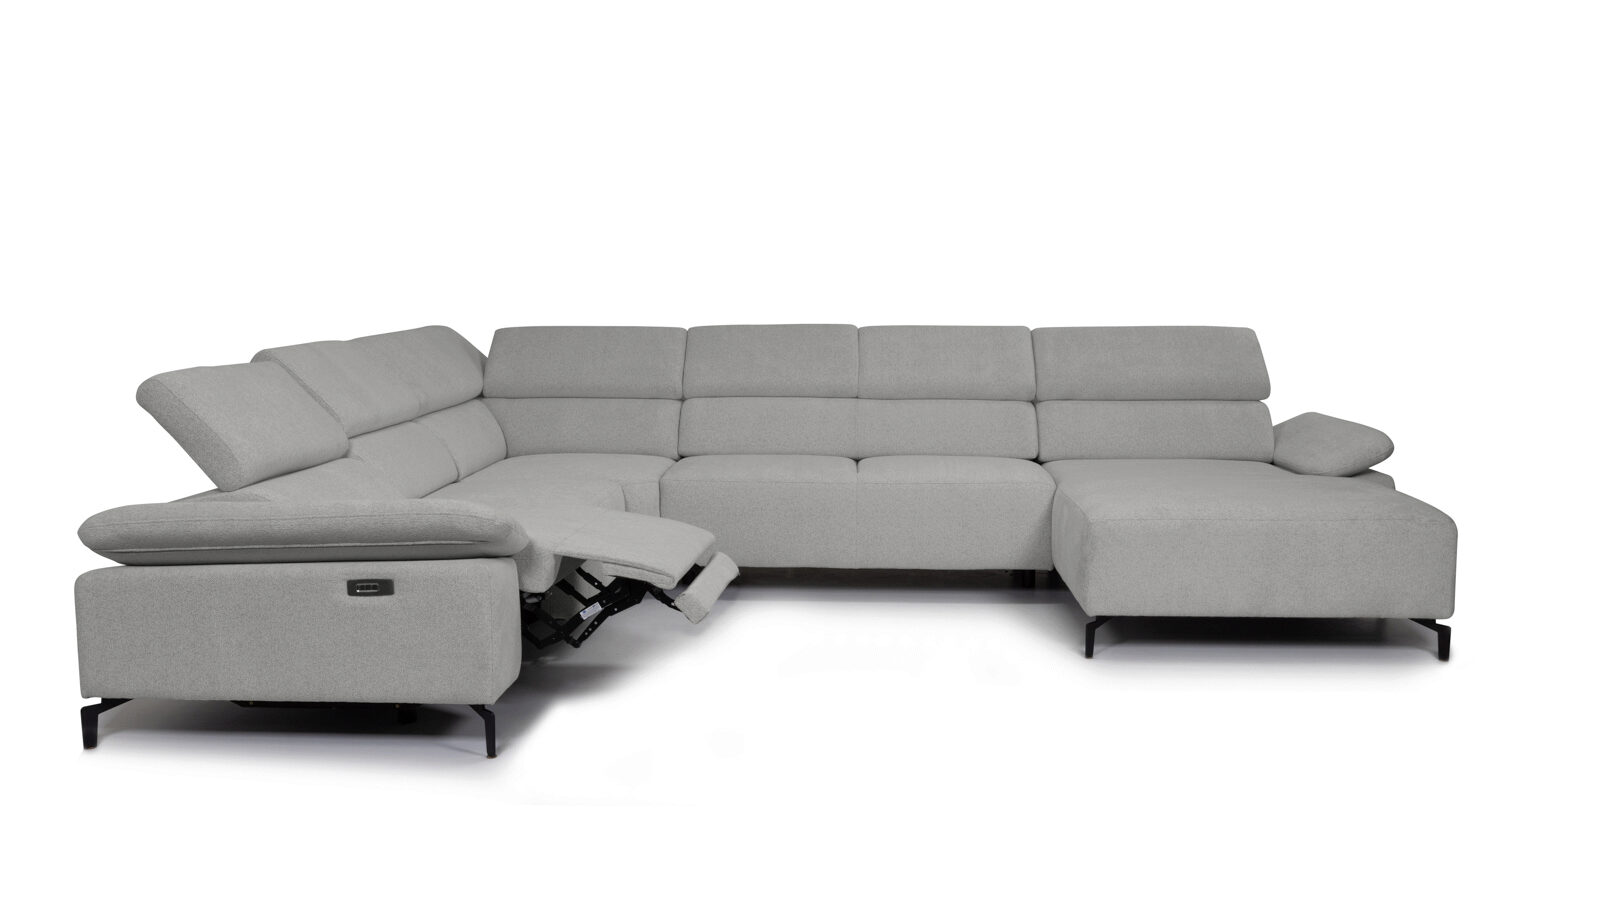 П-образный диван Square new с реклайнером слева прямой диван с реклайнером слева square new